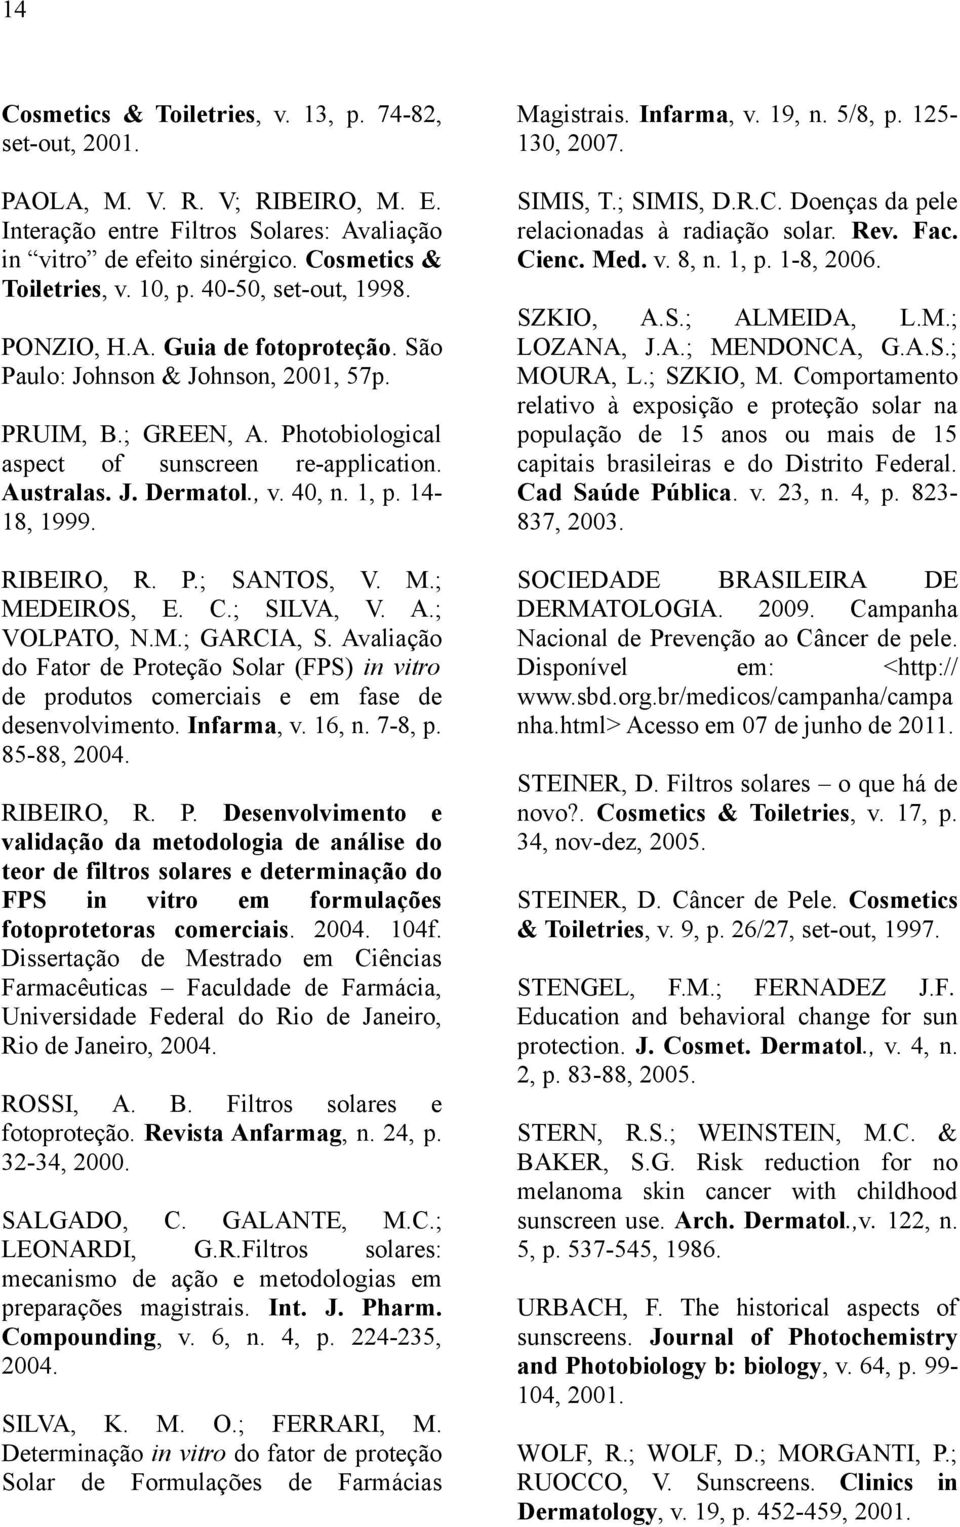 40, n. 1, p. 14-18, 1999. RIBEIRO, R. P.; SANTOS, V. M.; MEDEIROS, E. C.; SILVA, V. A.; VOLPATO, N.M.; GARCIA, S.